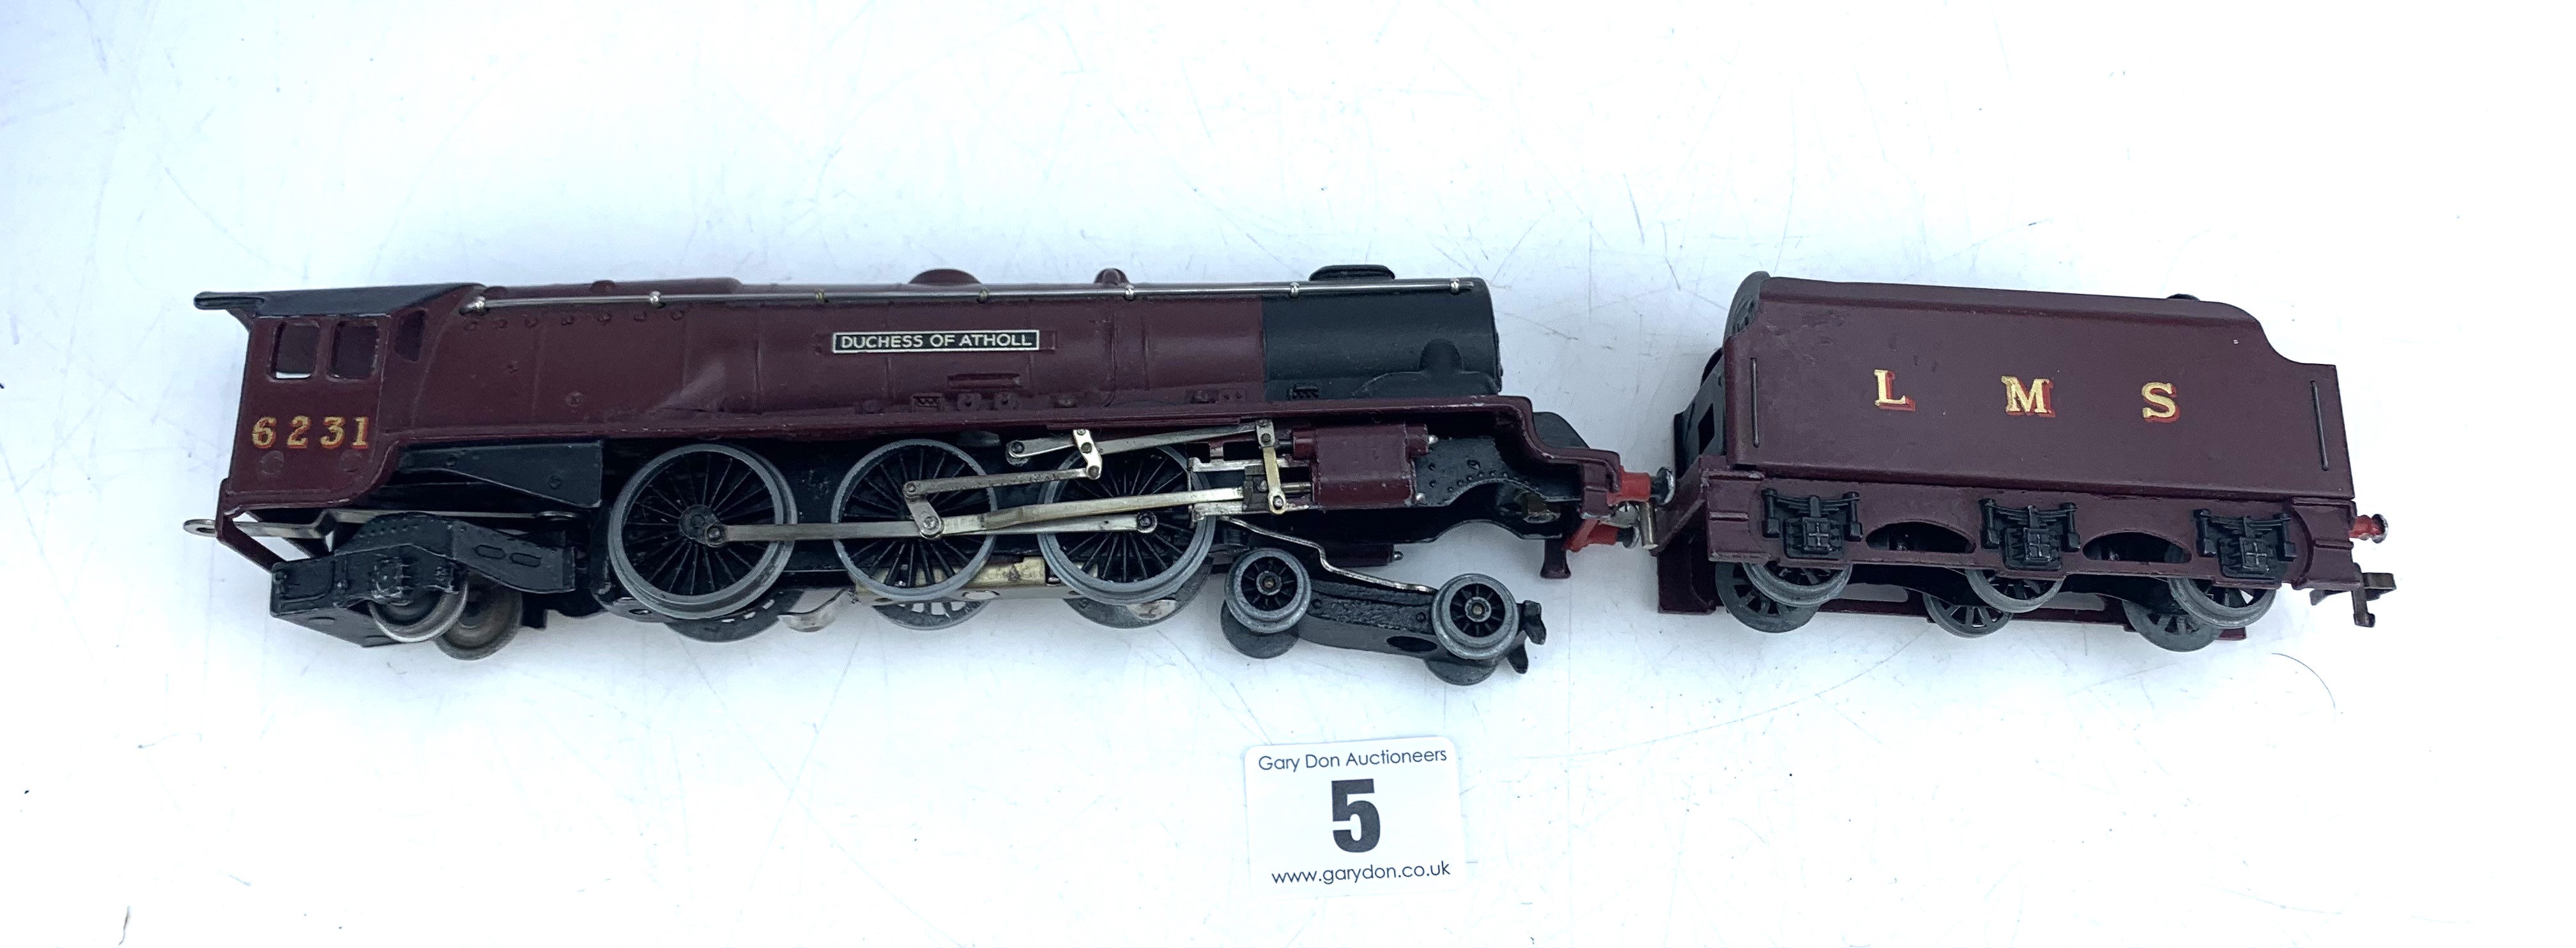 Hornby loco & tender - Image 2 of 4